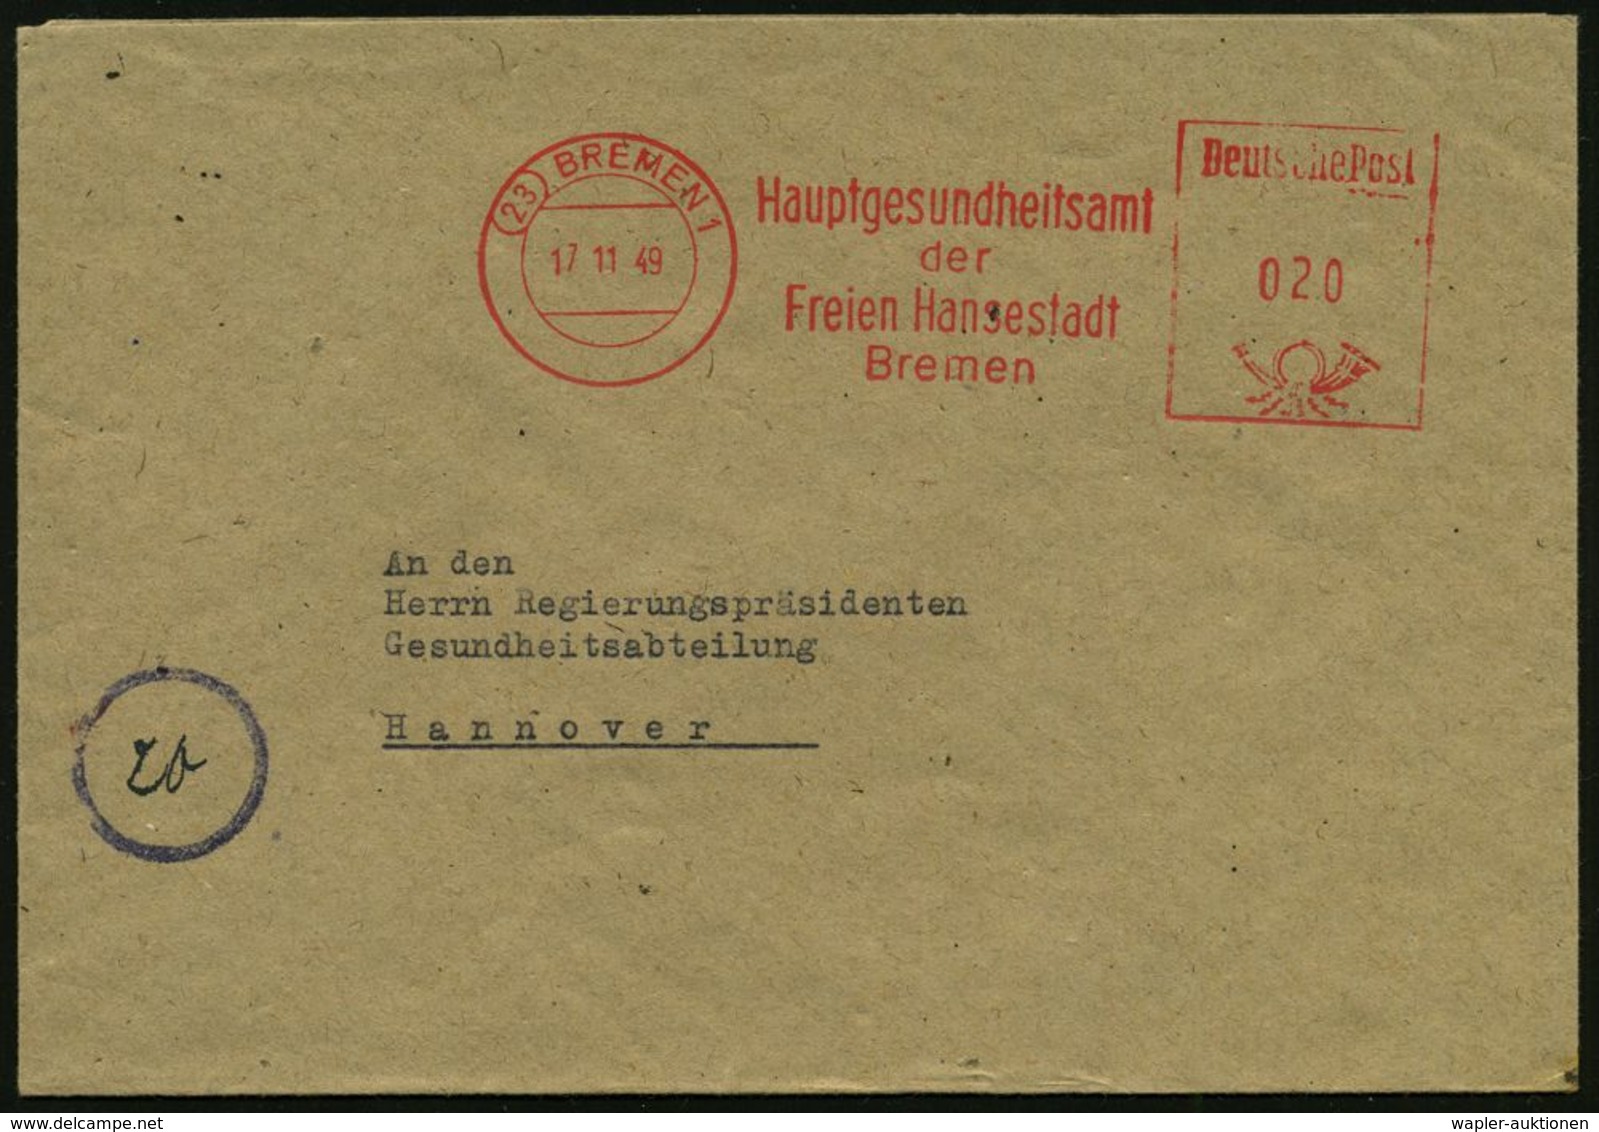 MEDIZINISCHE INSTITUTIONEN & INSTITUTE : (23) BREMEN 1/ Hauptgesundheitsamt/ Der/ Freien Hansestadt 1949 (17.11.) AFS ,  - Medizin